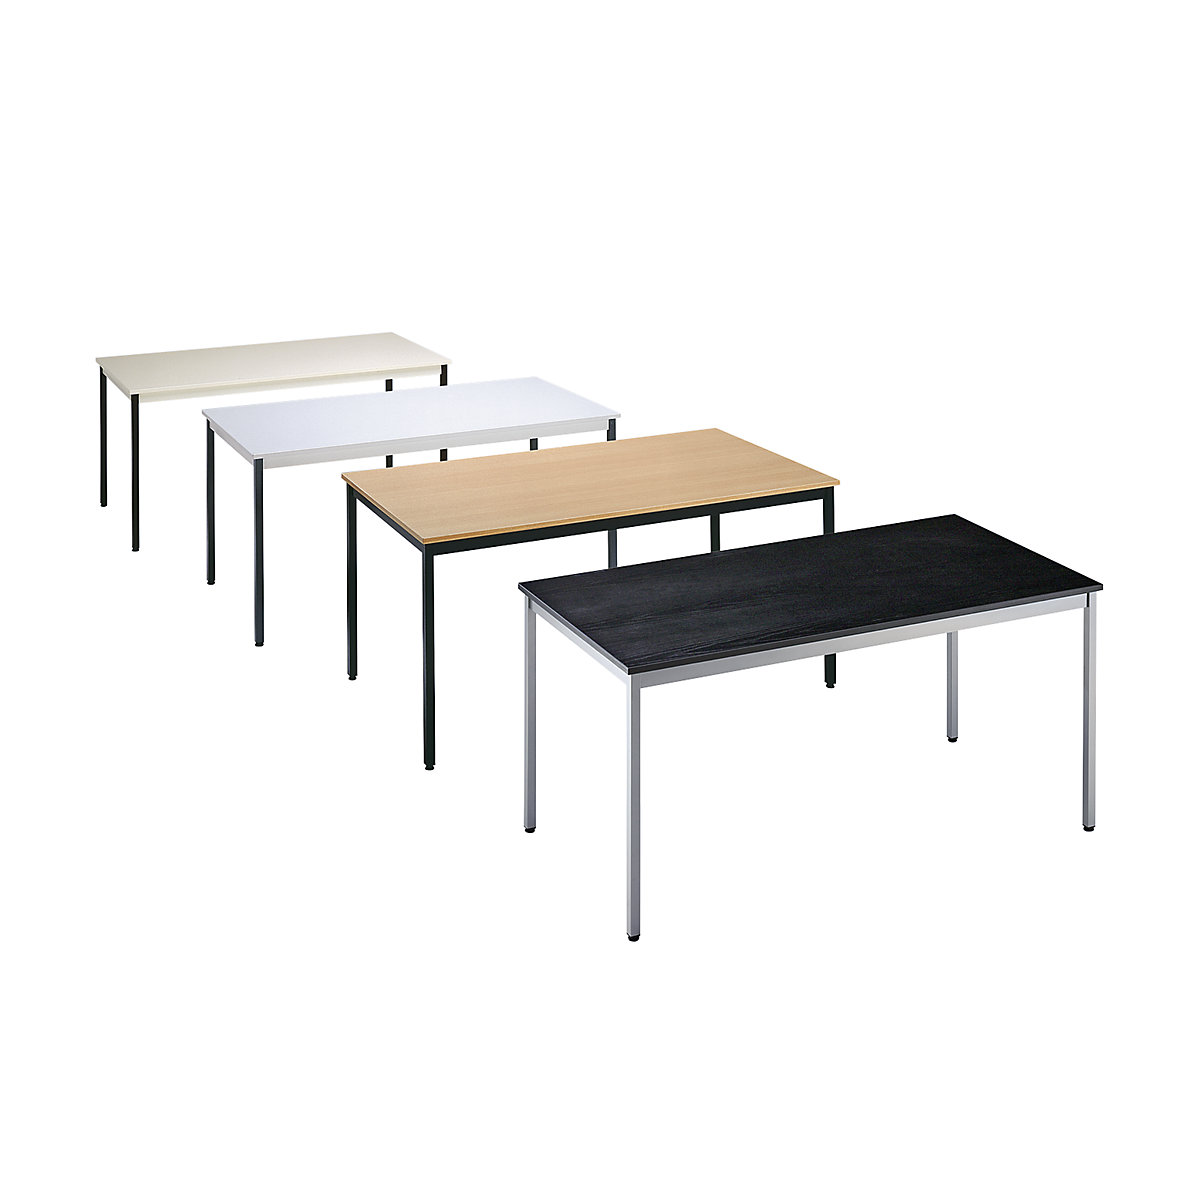 Table polyvalente – eurokraft basic, rectangulaire, l x h 1200 x 740 mm, profondeur 600 mm, plateau façon érable, piétement aluminium-1